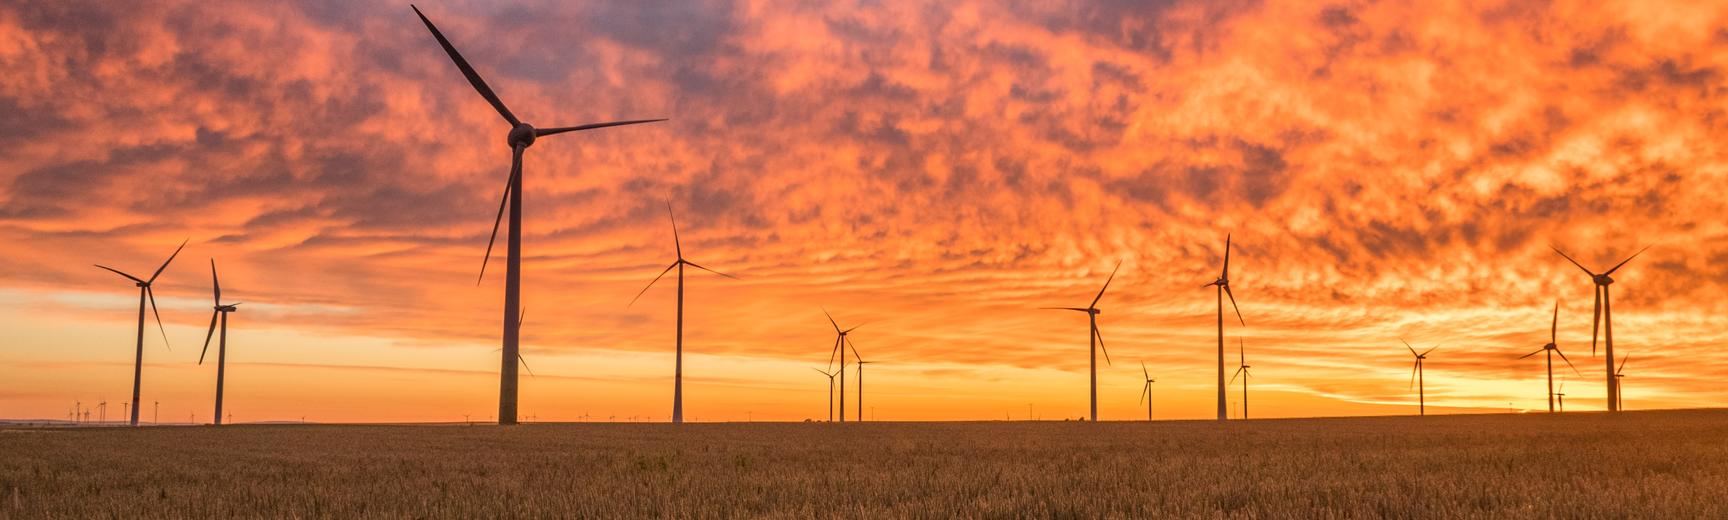 A wind farm in a barley field, set against a bright-orange dawn sky